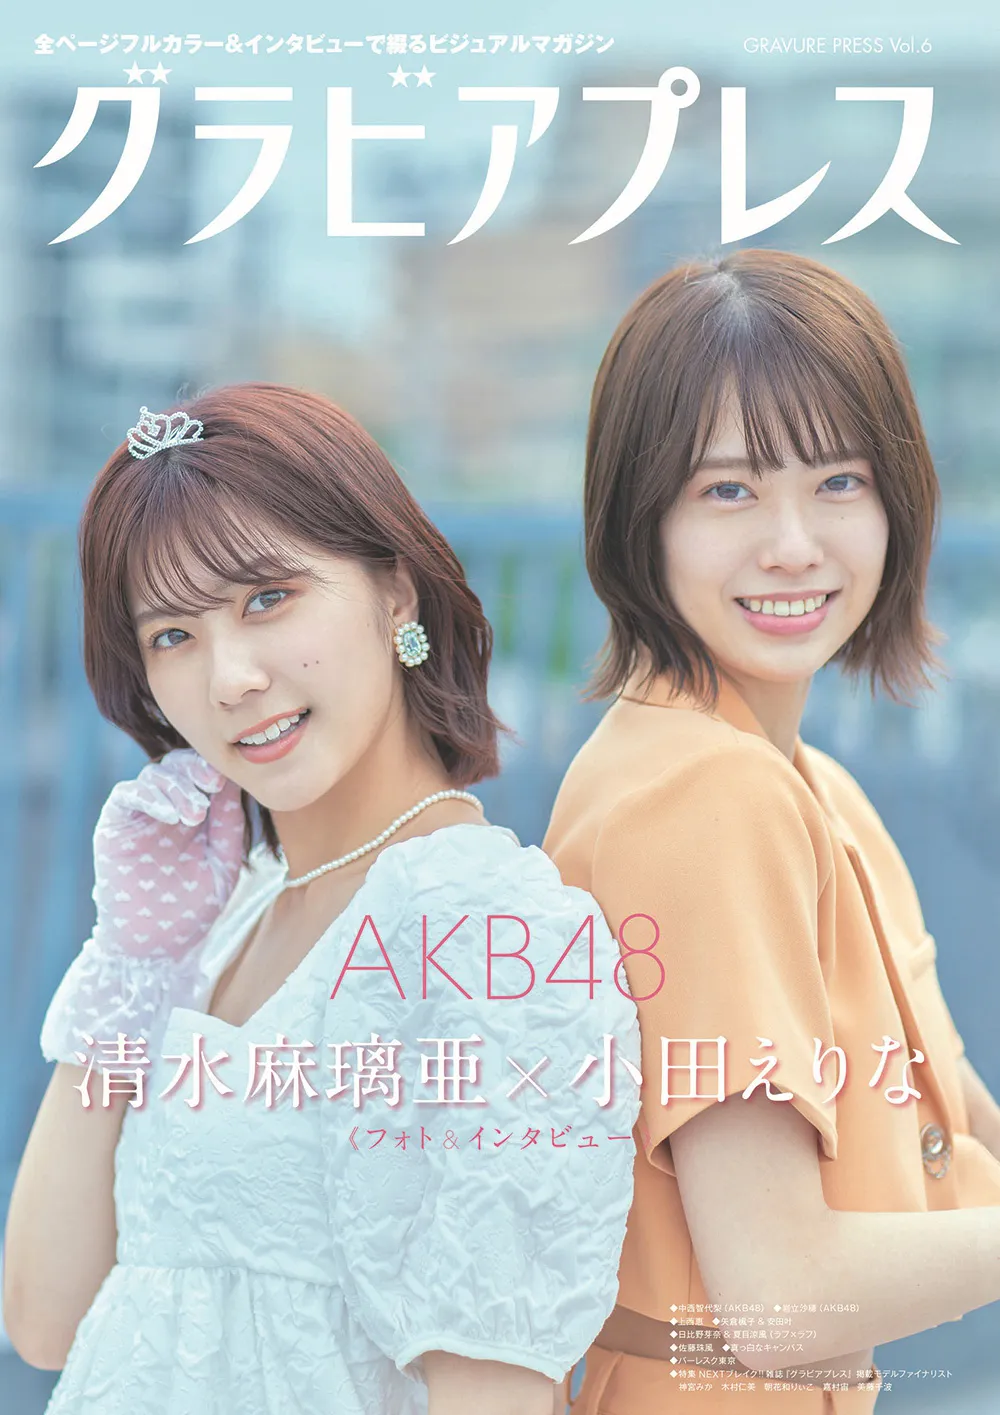 清水麻璃亜と小田えりな(AKB48)が「グラビアプレス」Vol.6のW表紙に登場